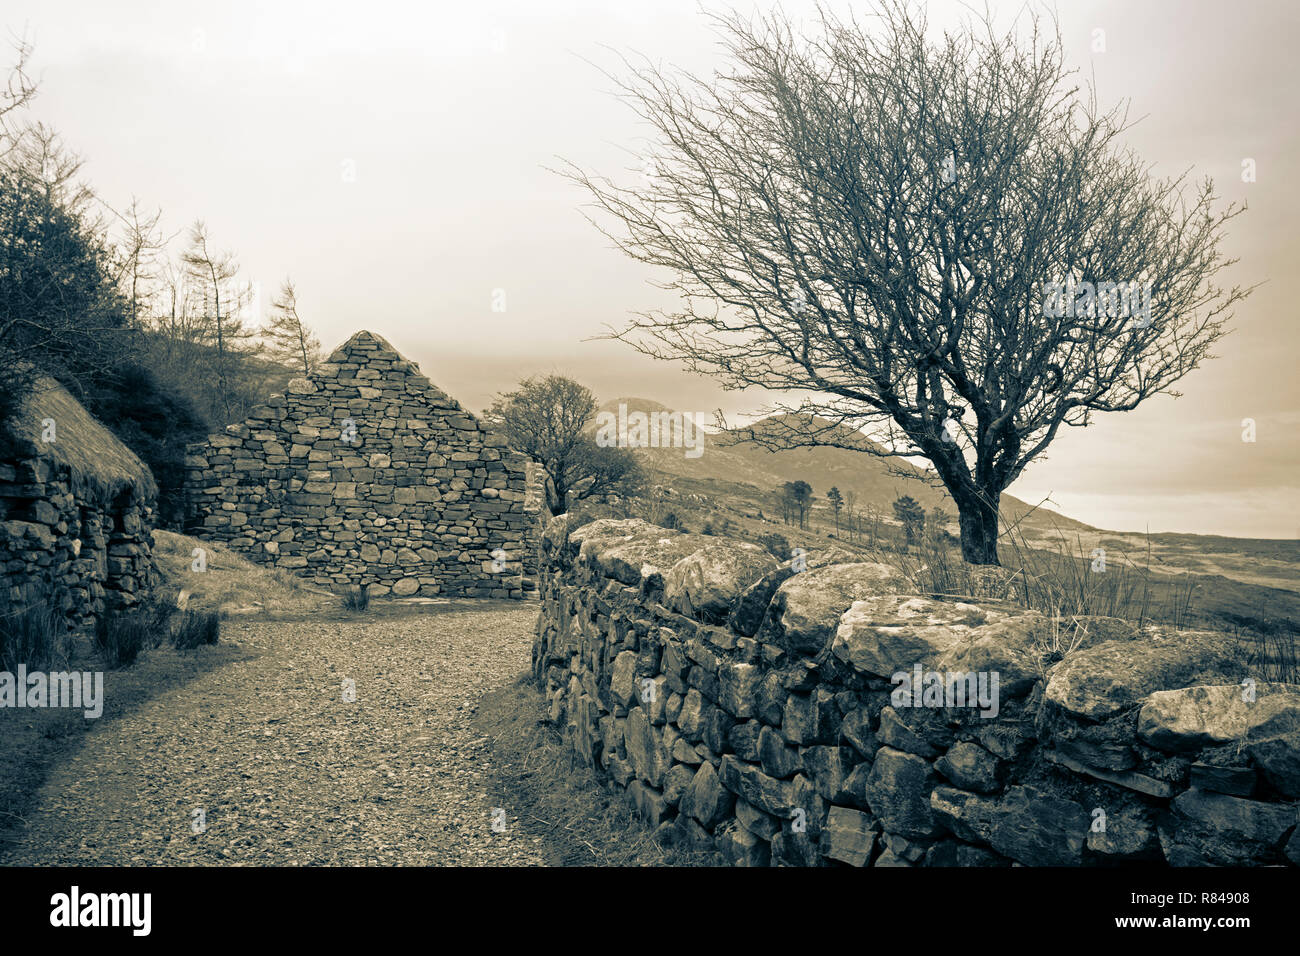 L'Irlande, le Connemara Heritage Centre, prefamine restauré cottage de Dan O'Hara qui a été forcé d'émigrer dans les années 1840 quand il a été expulsé de son hom Banque D'Images